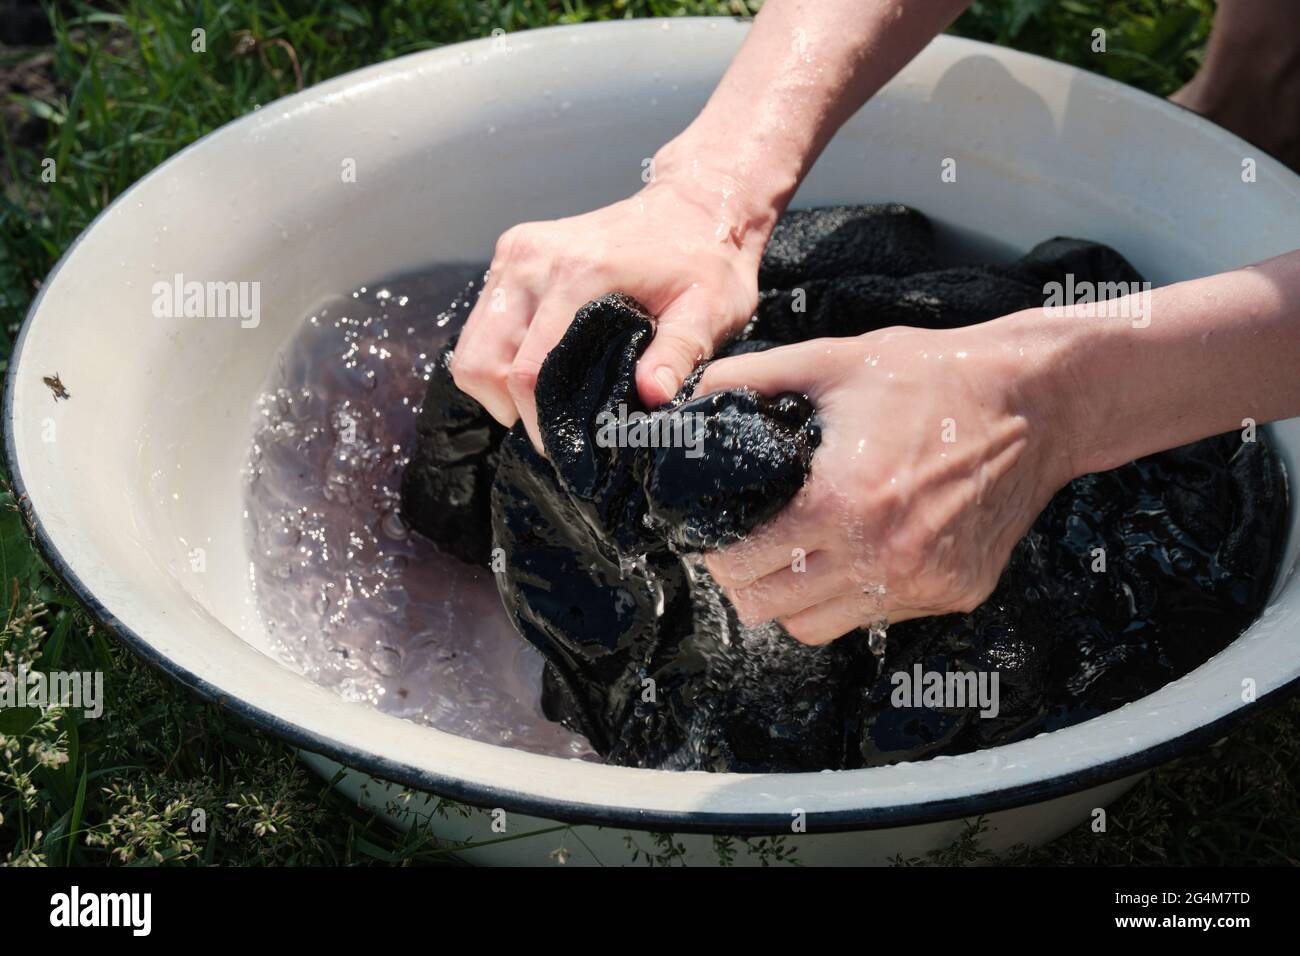 La joven lava la ropa a mano en el lavabo. Lavar a mano ropa en la naturaleza. Lavar ropa en el lago Fotografía de stock Alamy